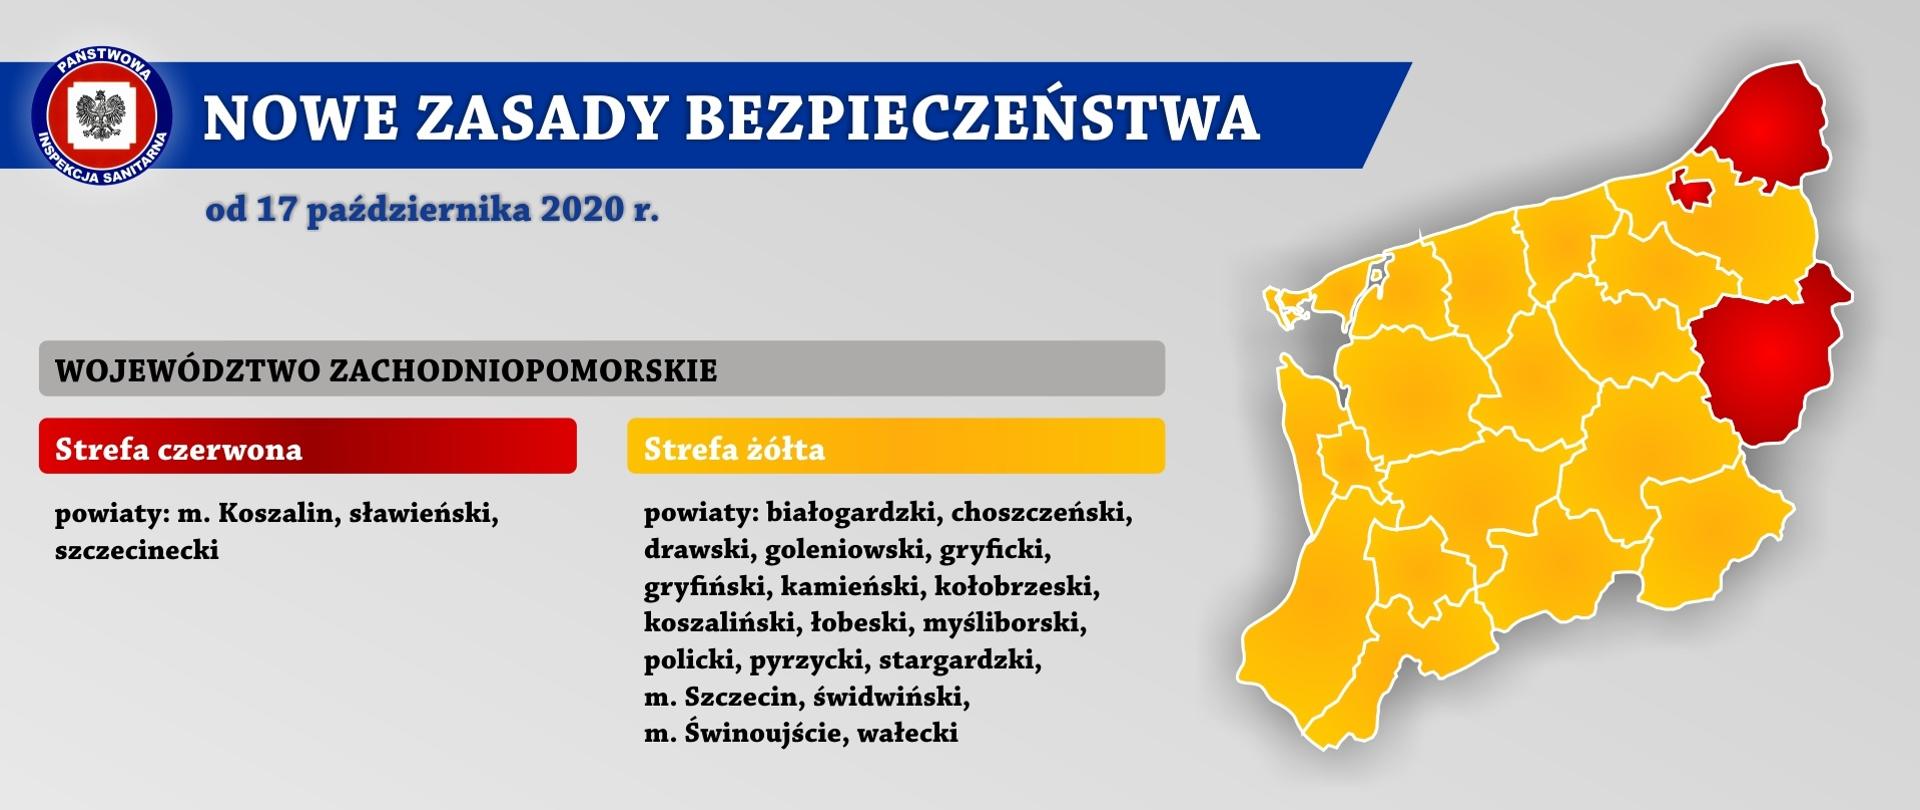 Na zdjęciu wykaz powiatów wraz z mapą województwa zachodniopomorskiego z podziałem na strefy czerwoną i żółtą, w których obowiązywać będą nowe zasady bezpieczeństwa od 17 października 2020 roku